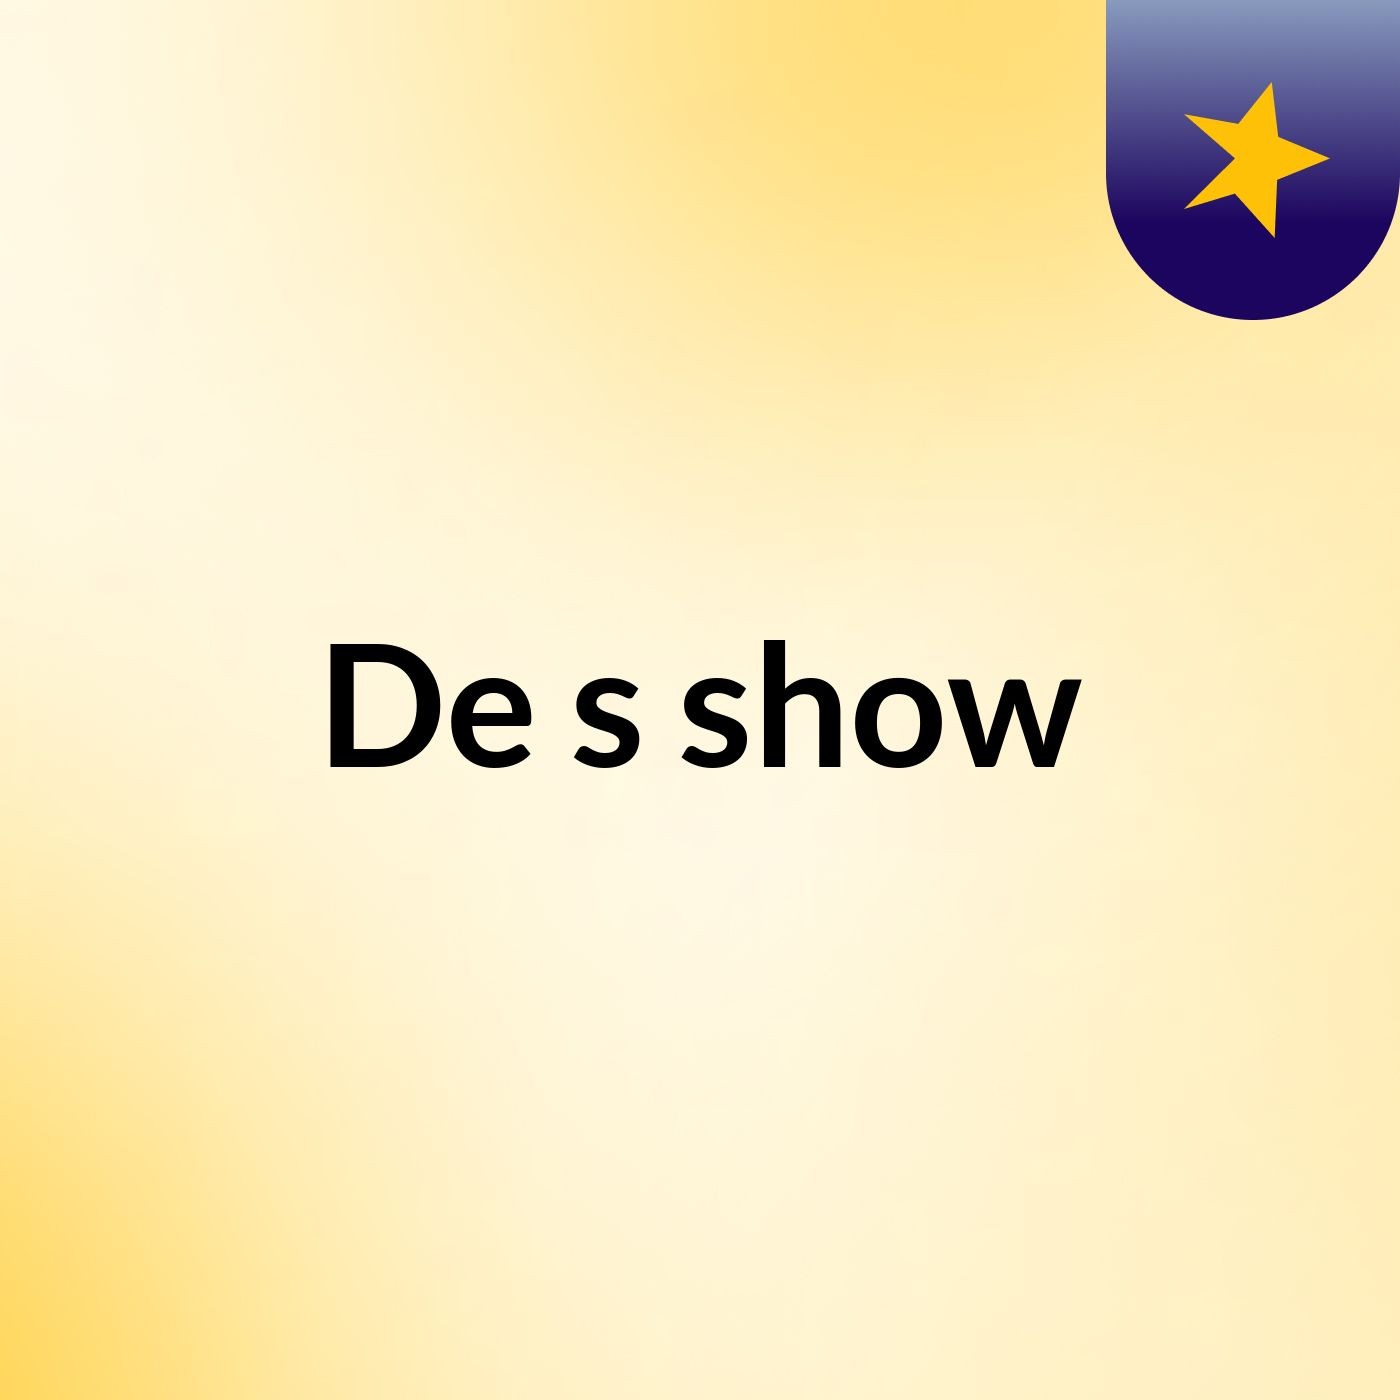 De's show